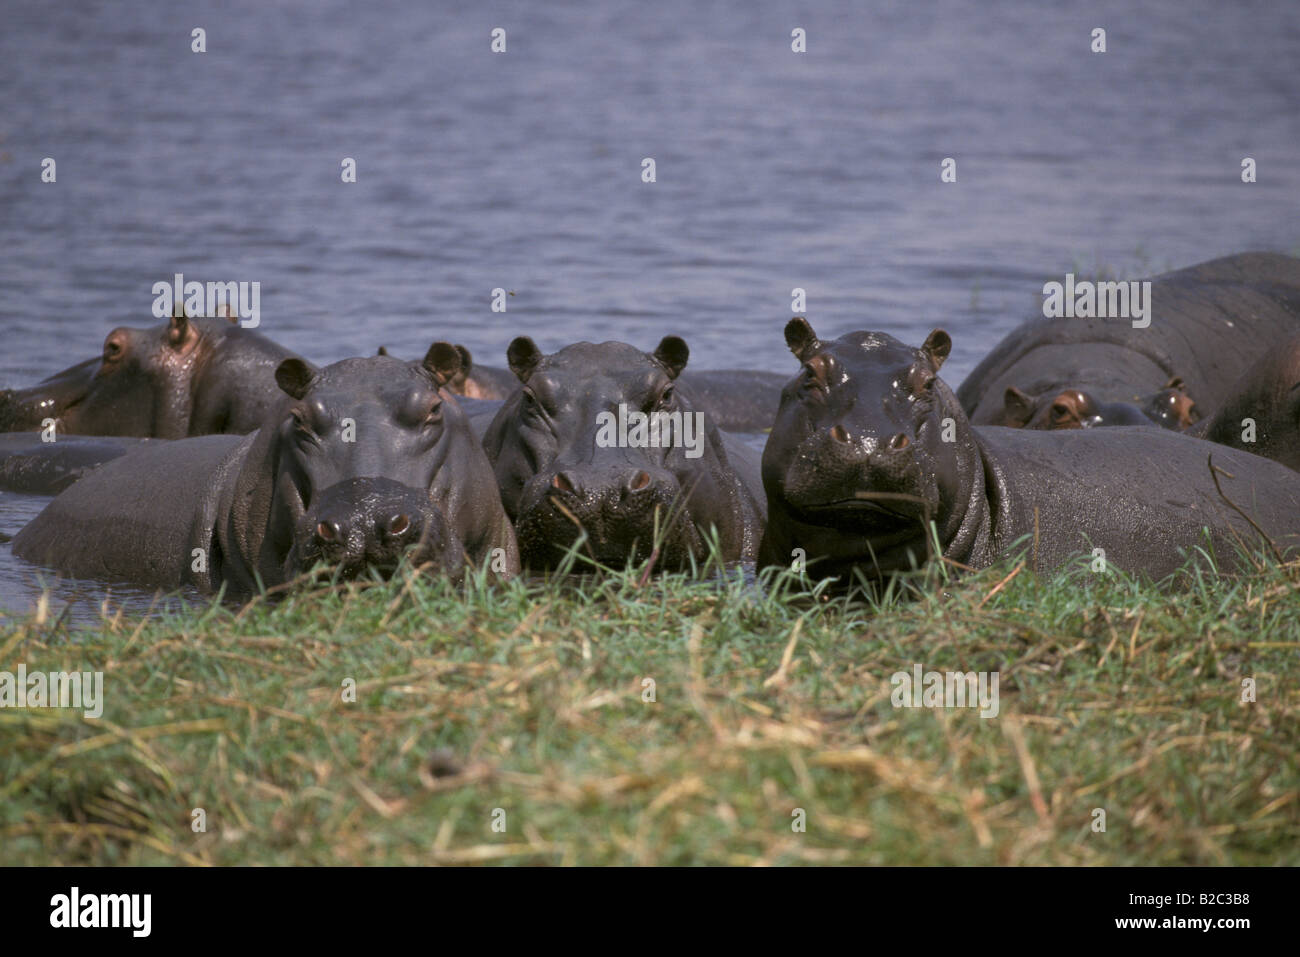 Groupe d'hippopotames dans l'eau, Chobe National Park, Botswana, Africa Banque D'Images